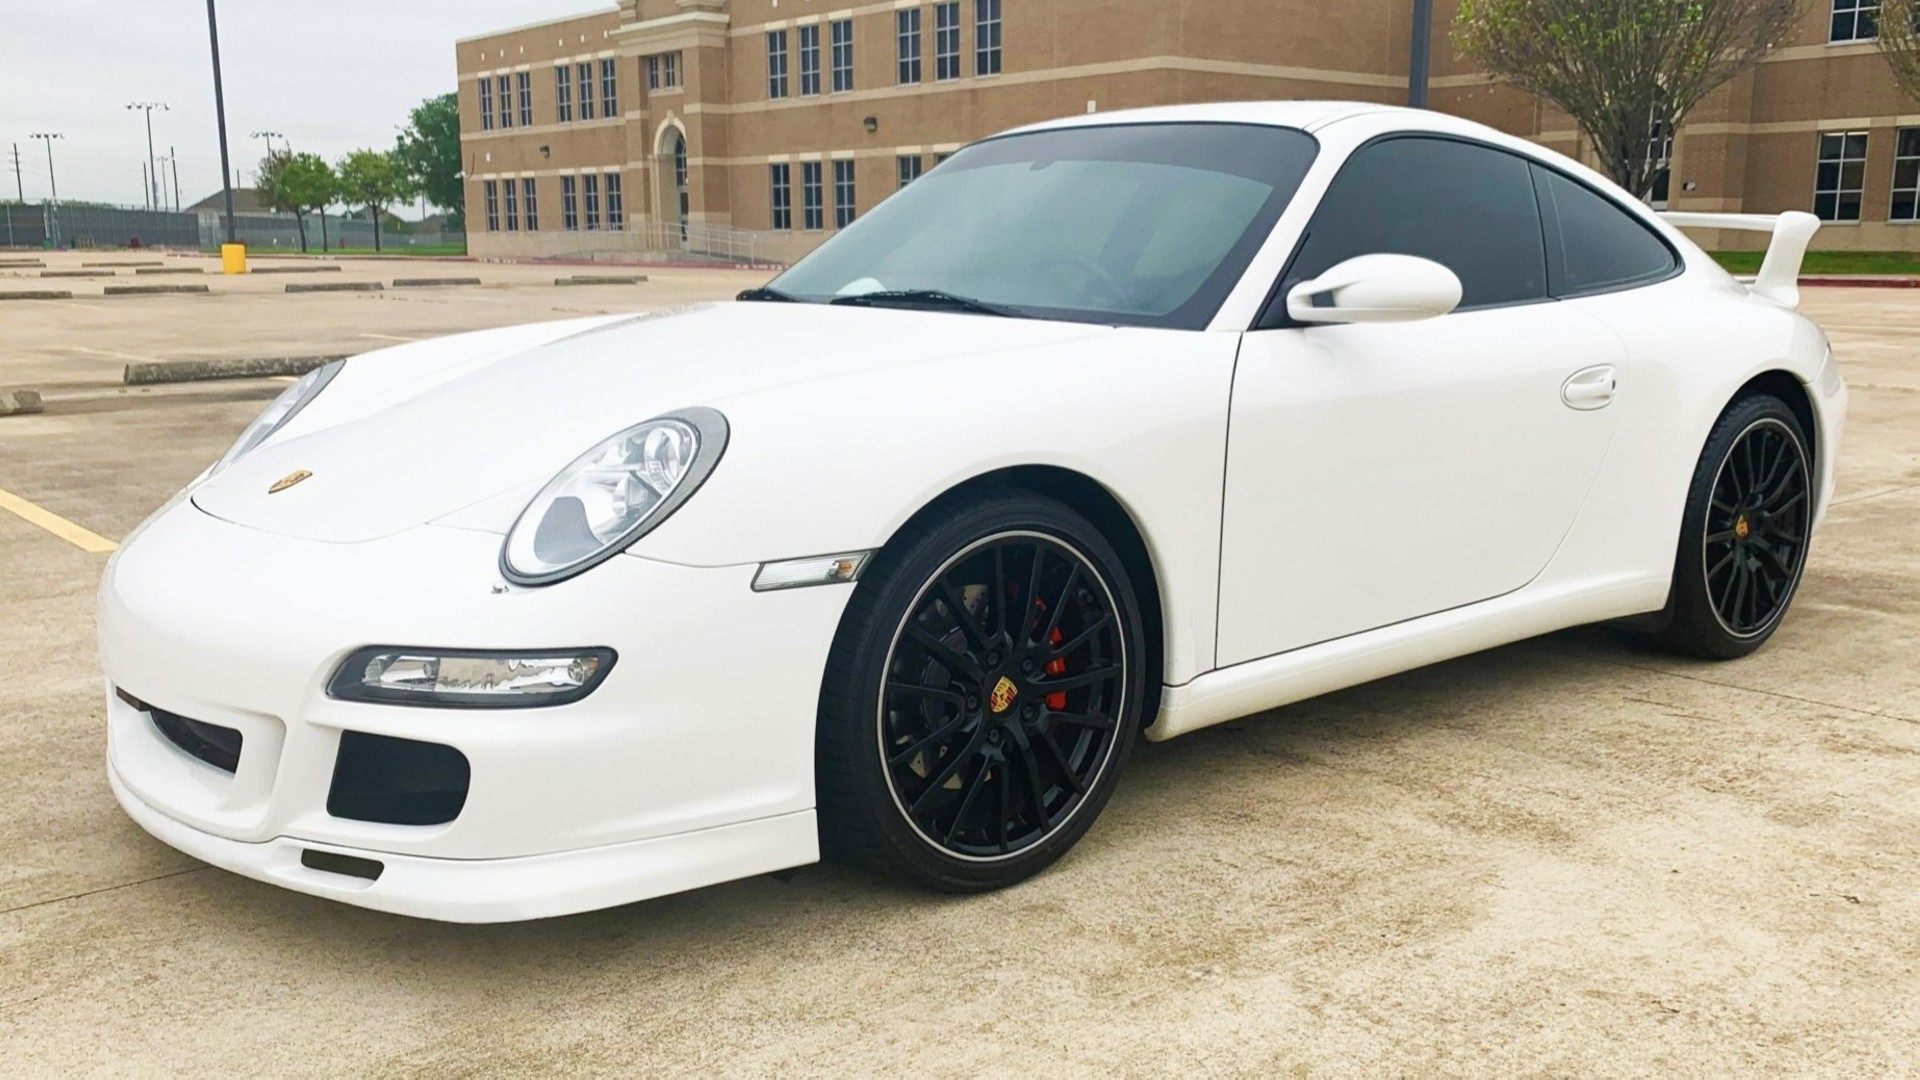 Presentamos al Porsche 911 “Centro”, un modelo muy especial